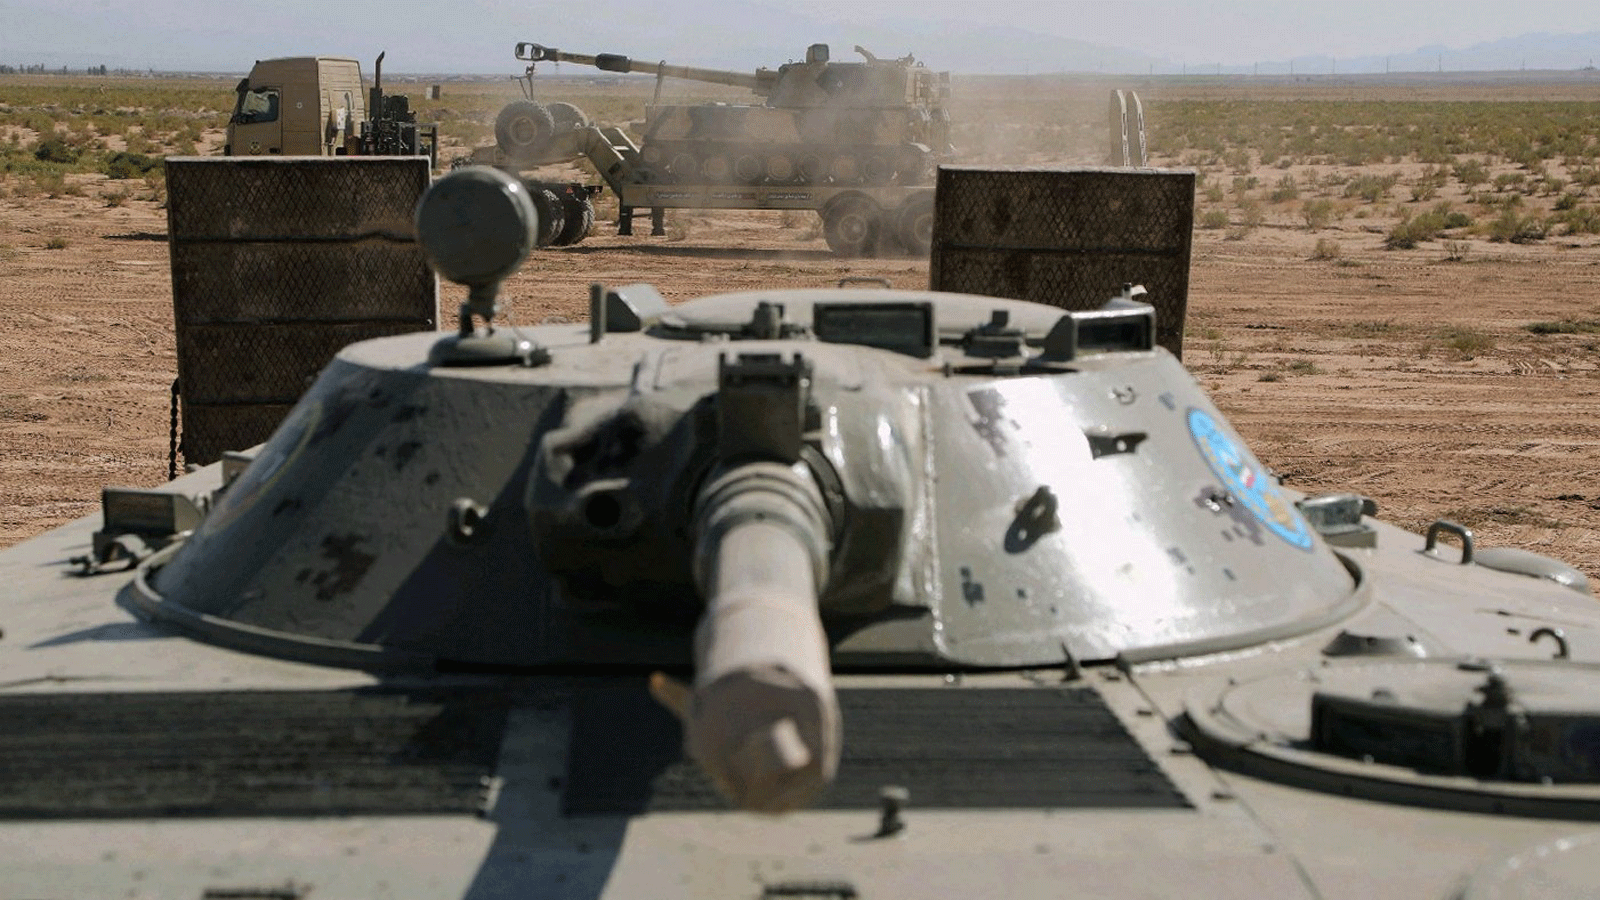 دبابات رانيان خلال مناورة عسكرية في شمال غرب البلاد ، بالقرب من الحدود الإيرانية الأذربيجانية. 1 تشرين الأول/أكتوبر 2021 (المكتب الاعلامي للجيش الإيراني)